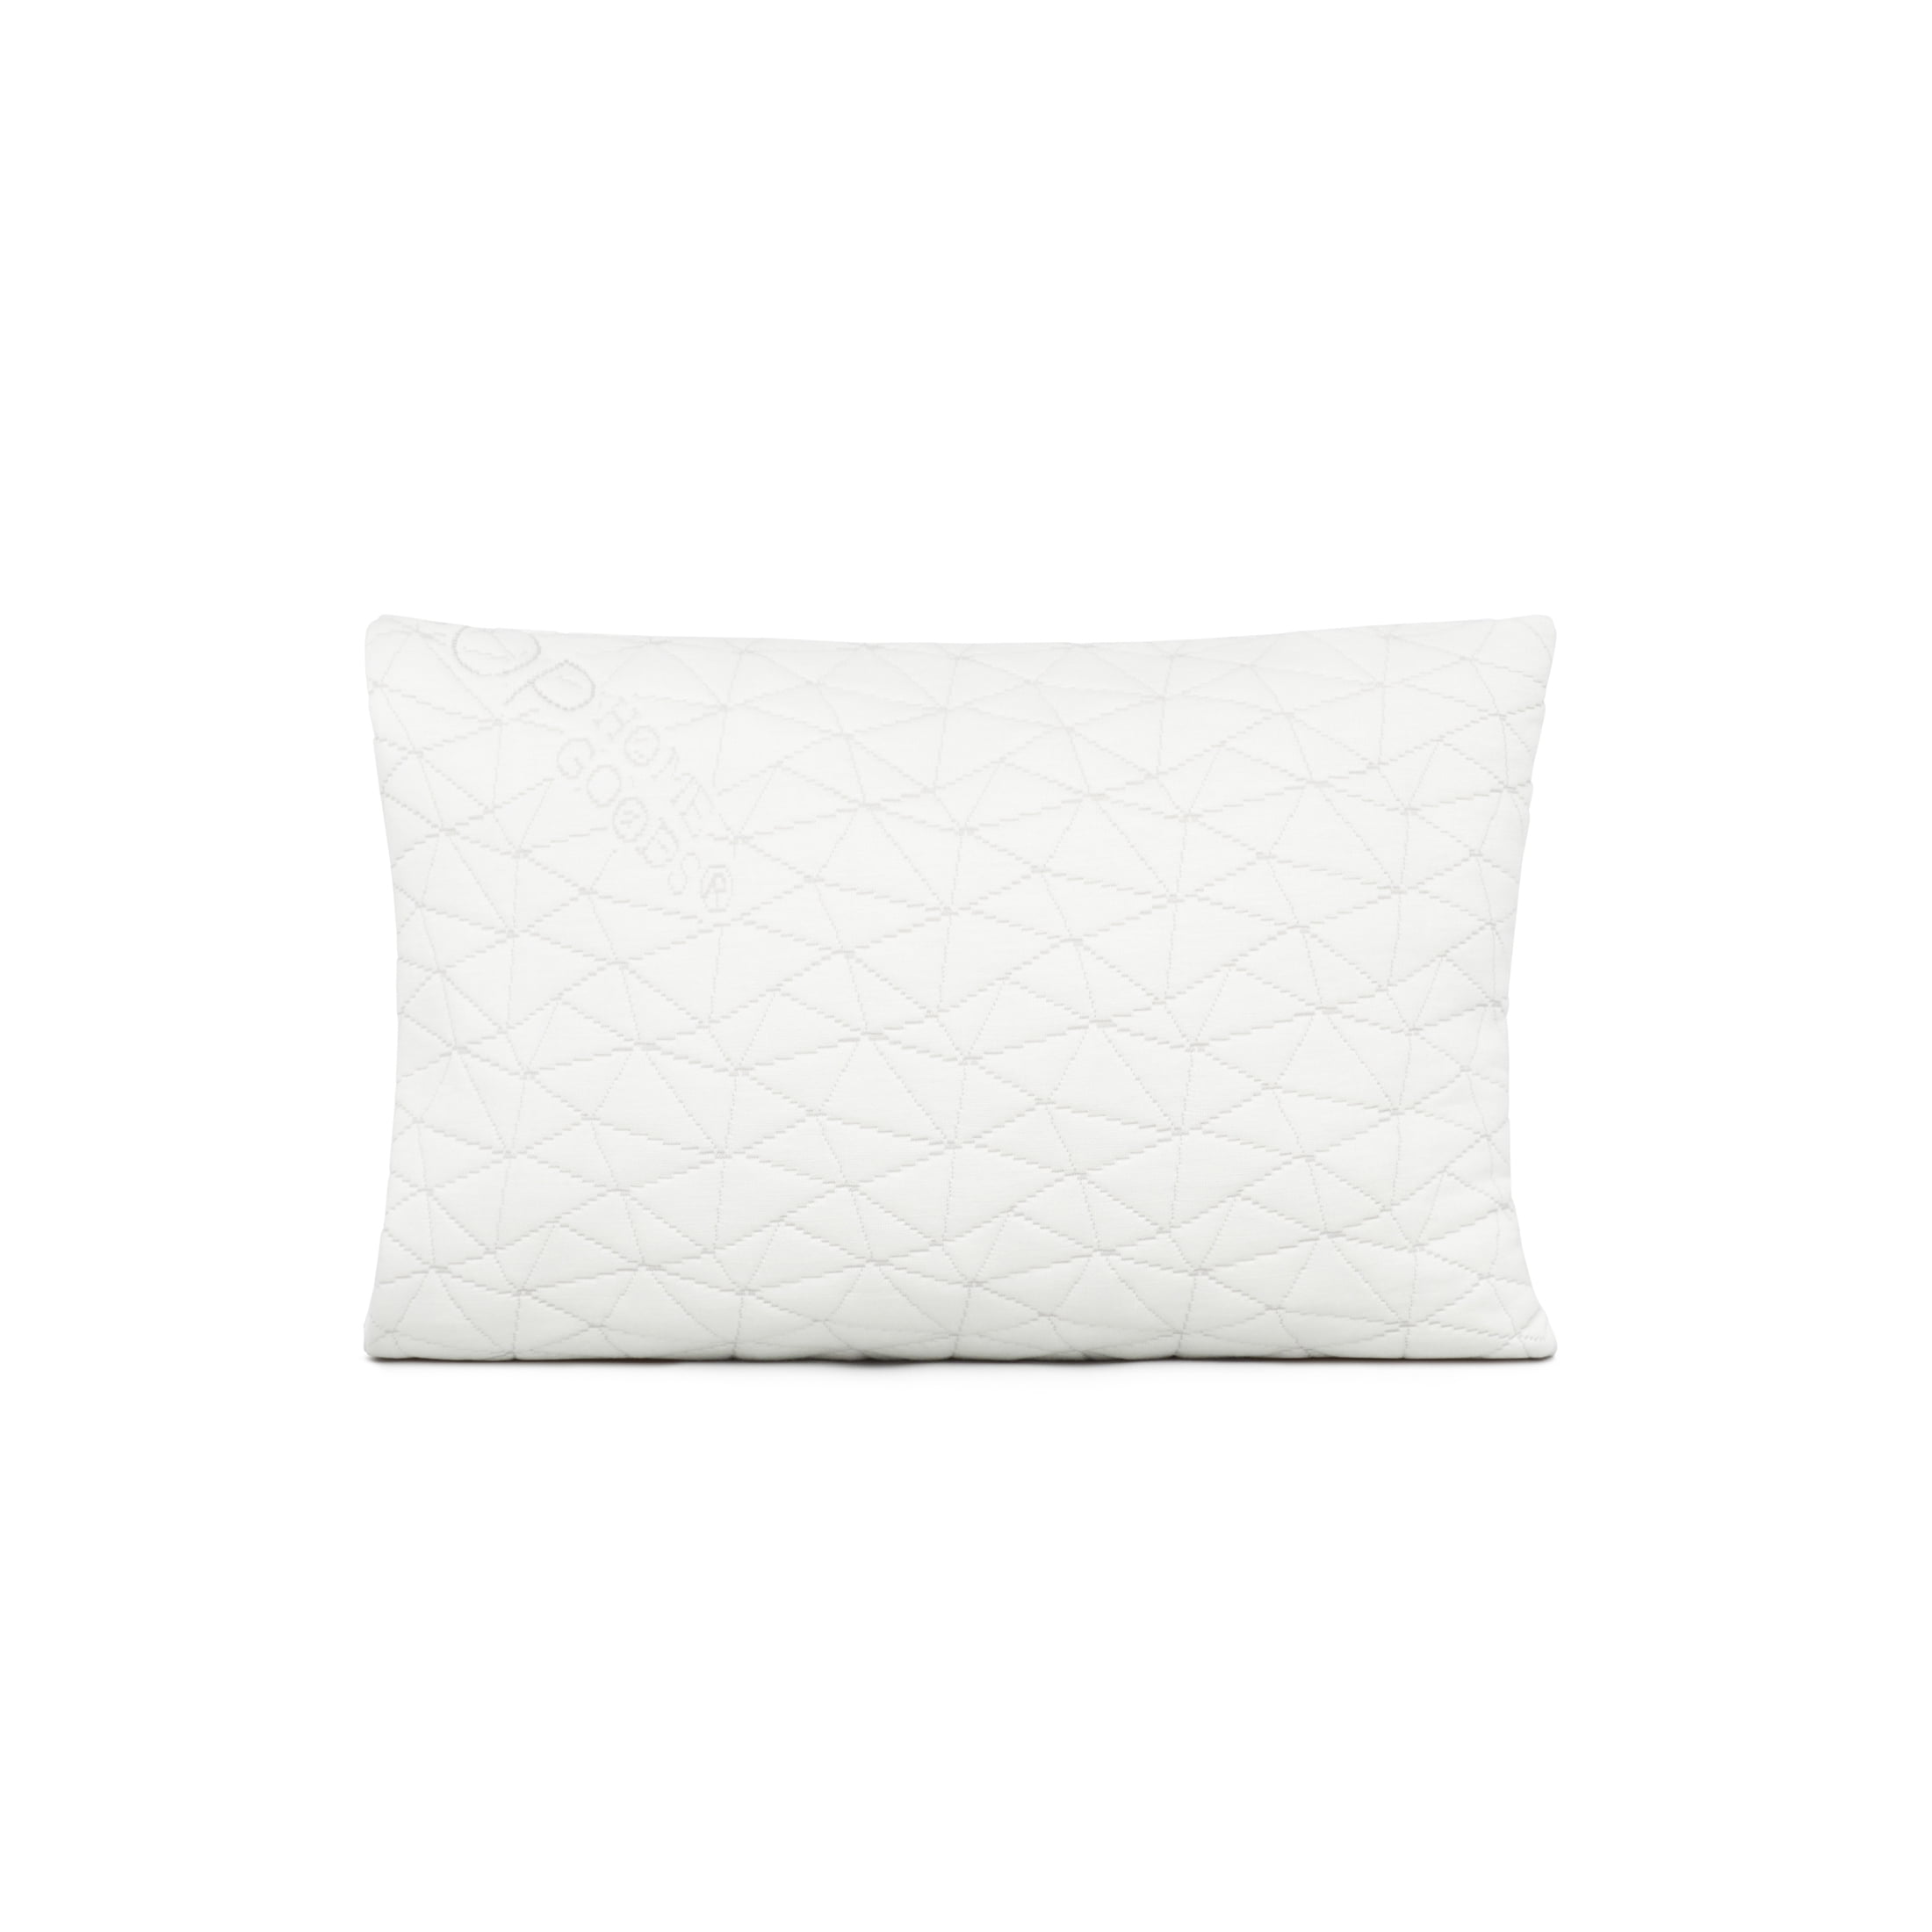 Premium Adjustable Loft Pillow Coop Home Goods Hypoallergenic Cross-Cut Memo 